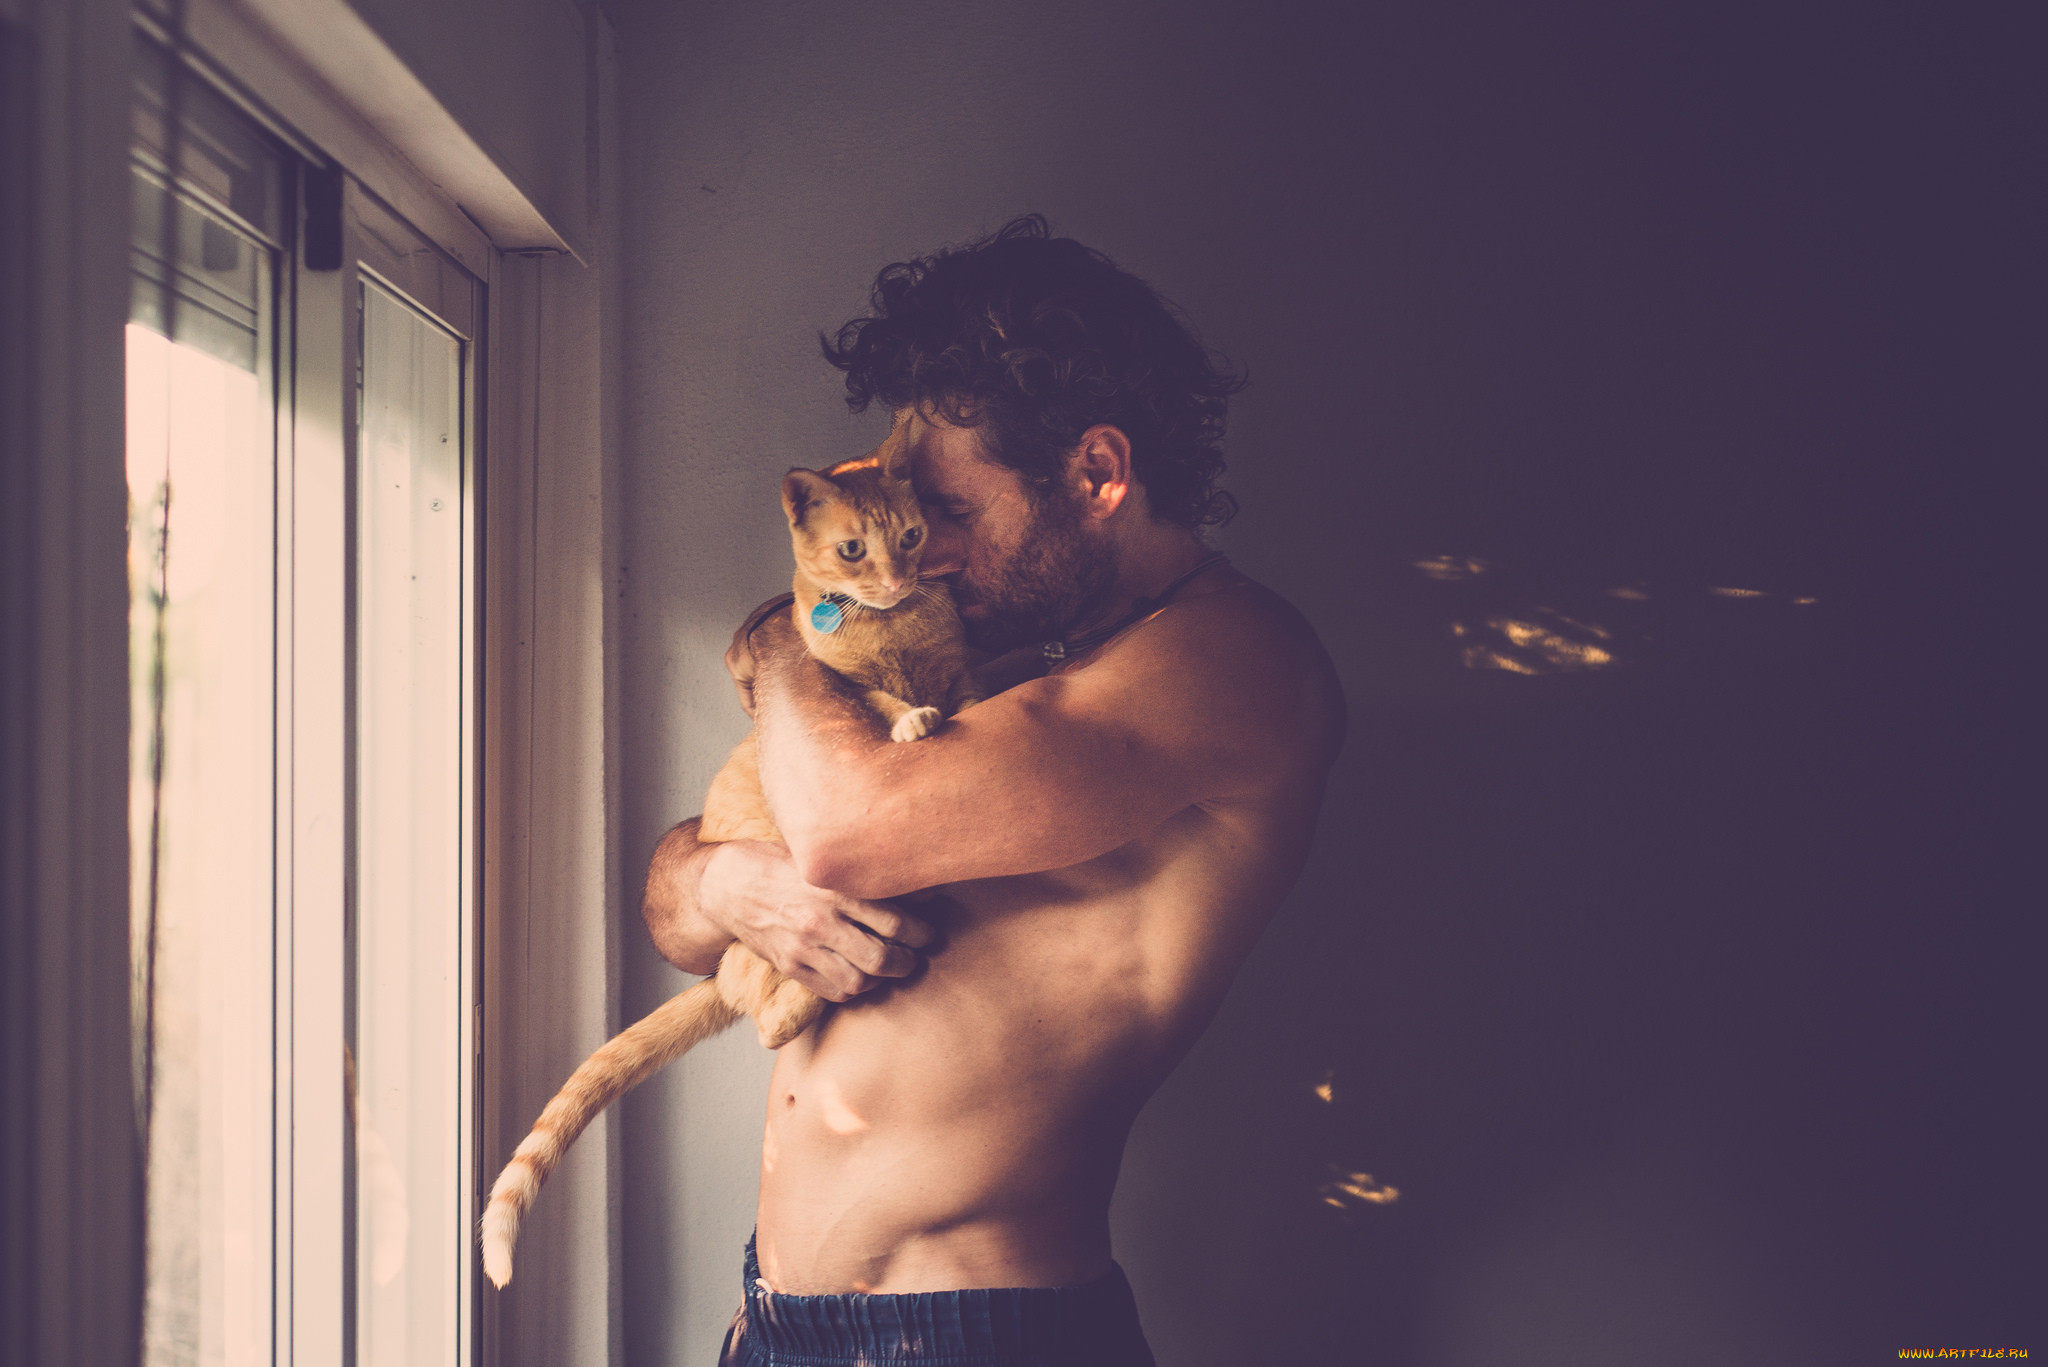 Мужчина с котом фото